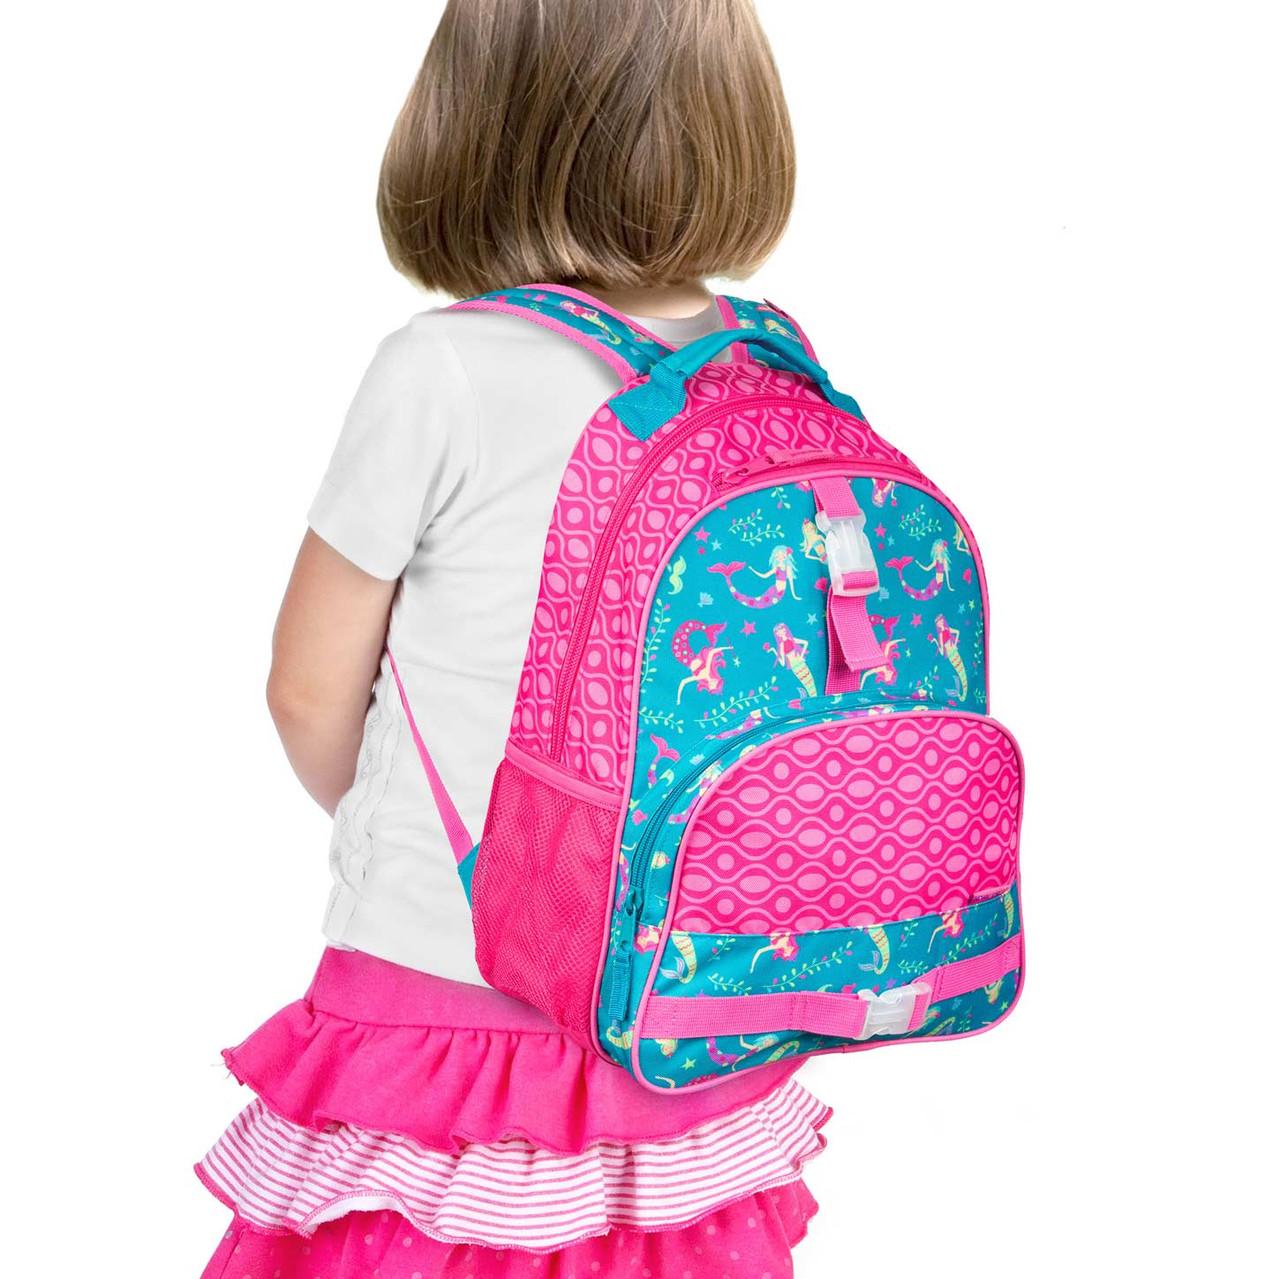 girl's backpack 